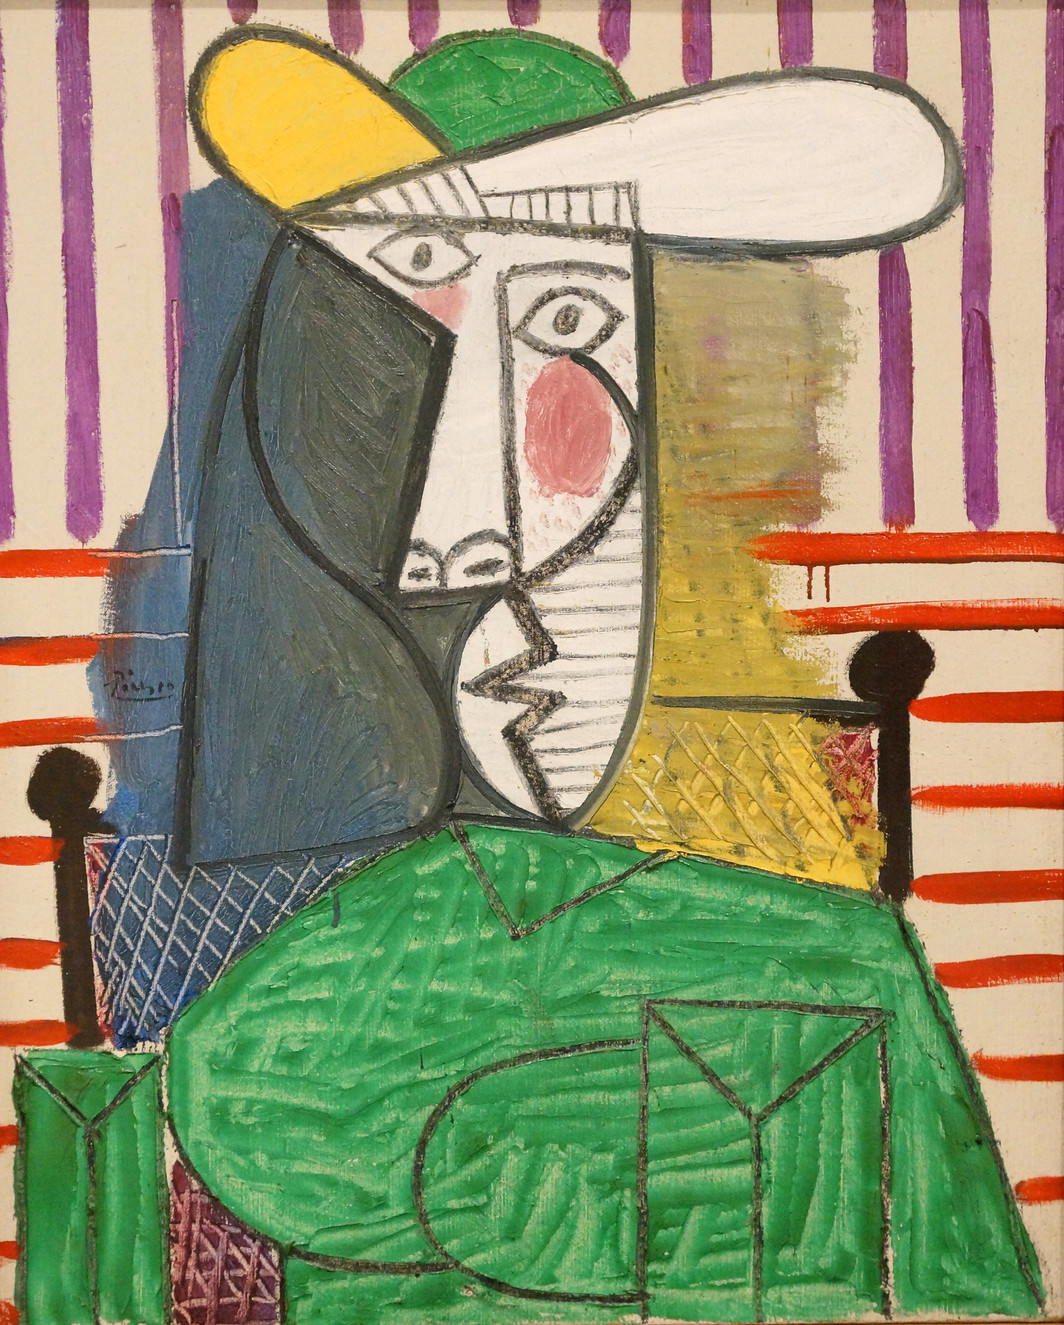 Picasso me parece arte aberrante y sobrevalorado